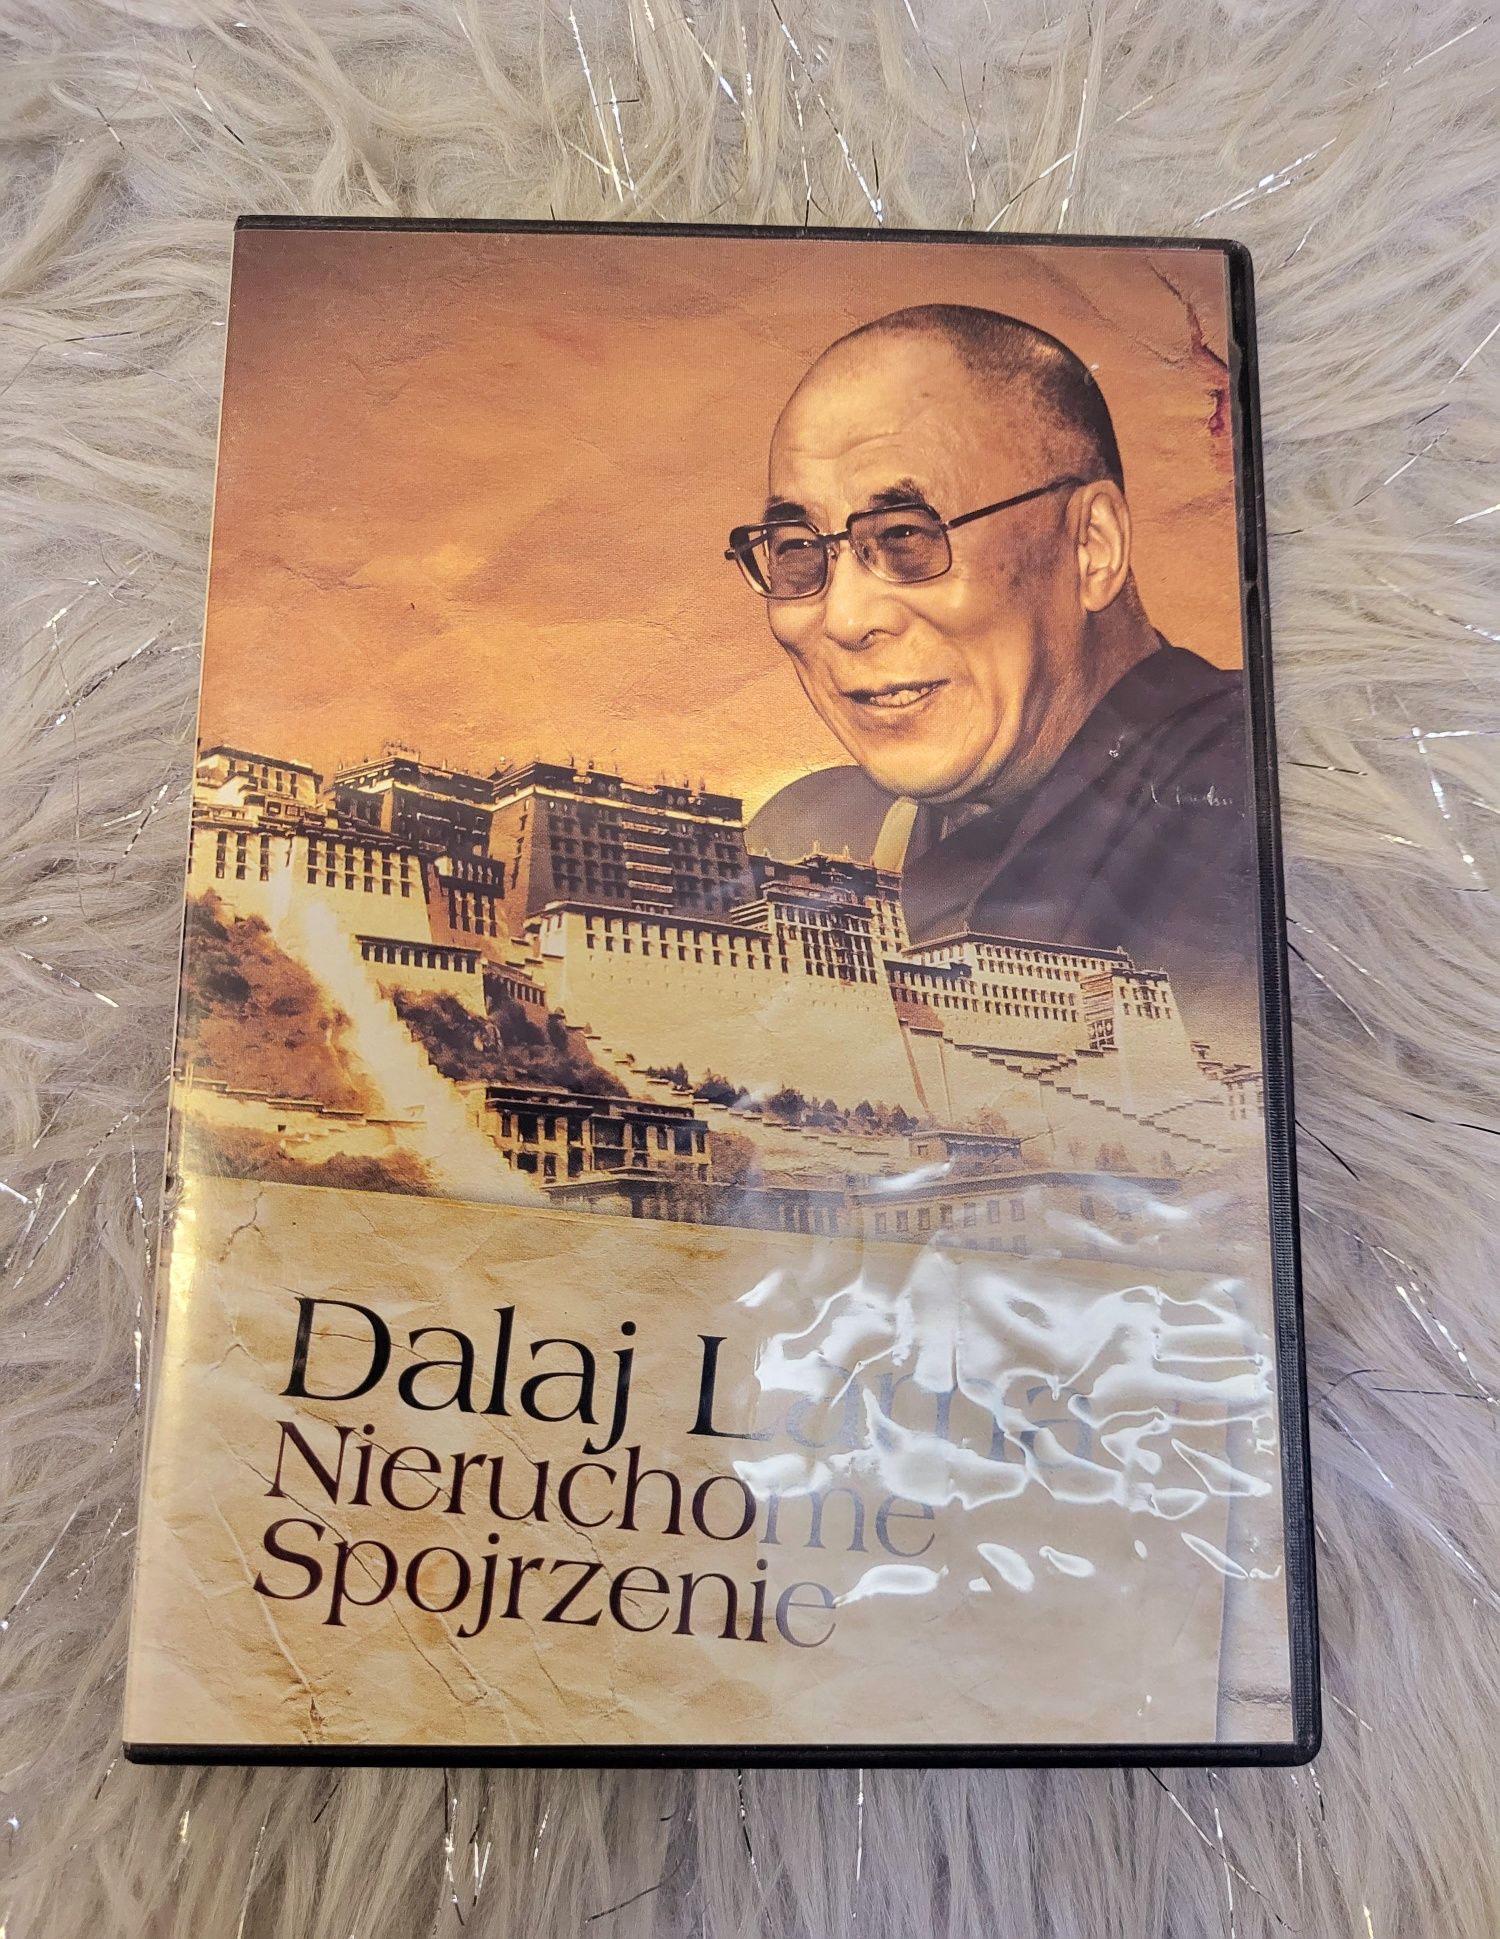 Dalaj Lama Nieruchome spojrzenie film dvd